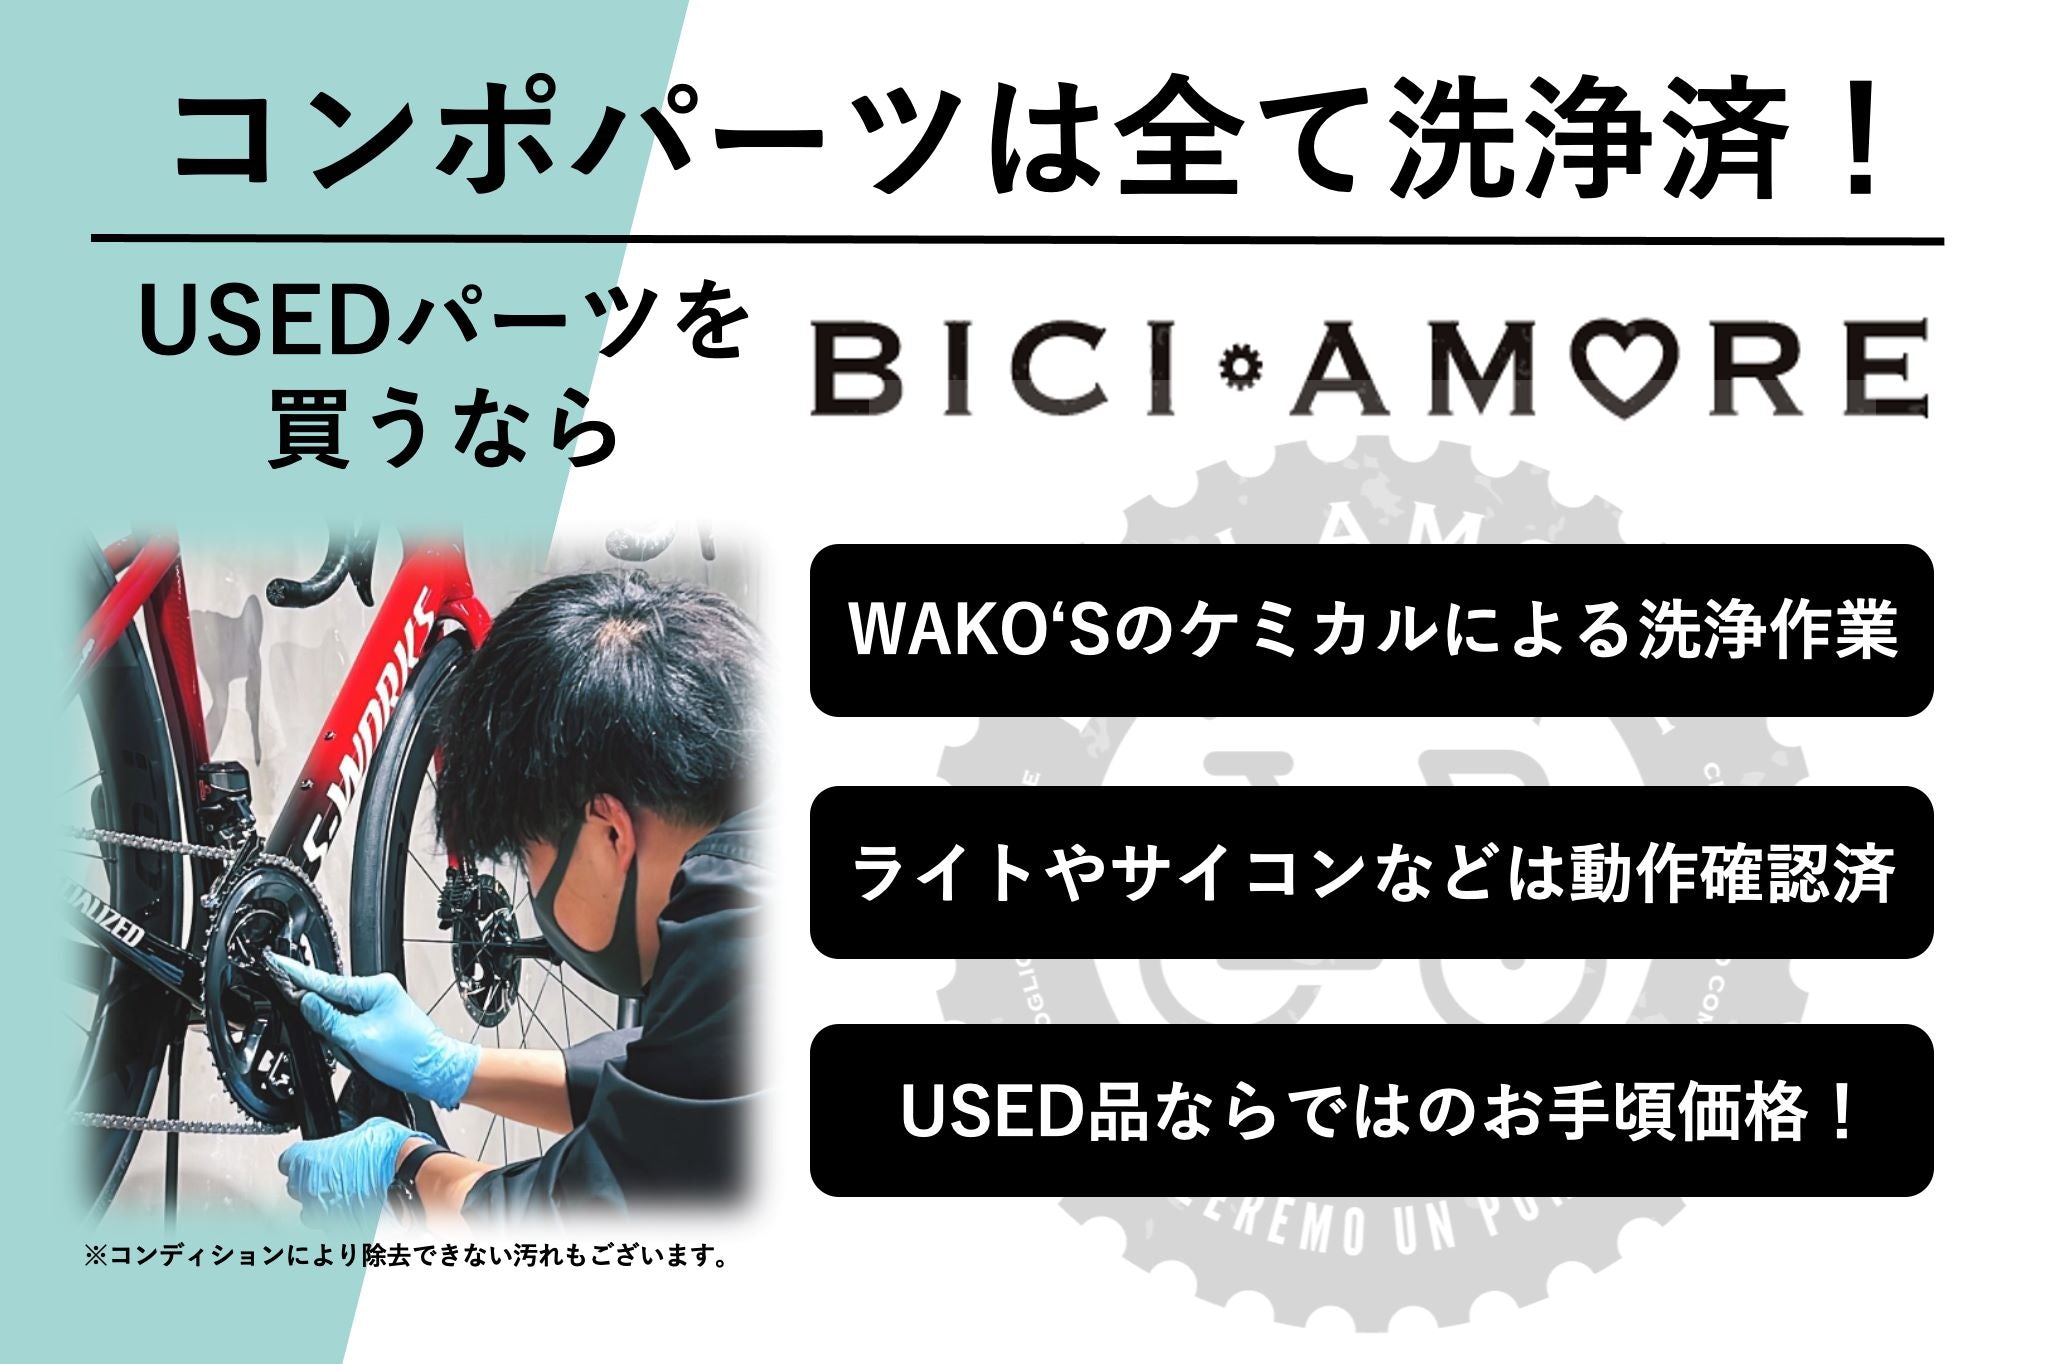 HK016 シマノ SHIMANO プロ バイブエアロ スーパーライト PRO VIBE AERO SUPERLIGHT カーボン ドロップハンドル  C-C エンド部 420mm